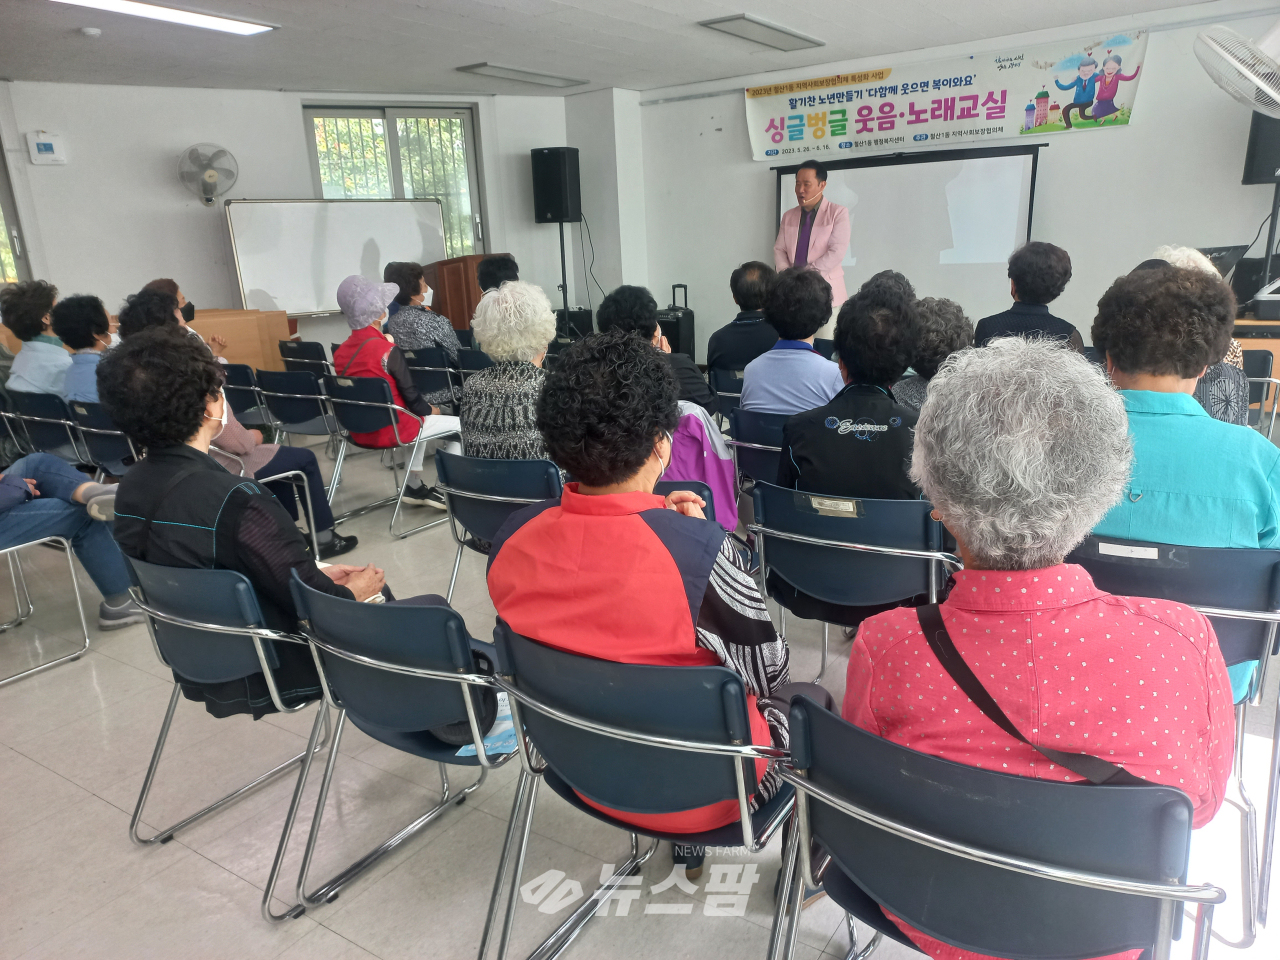 @철산1동 지역사회보장협의체는 지난 26일 철산1동 행정복지센터에서 ‘싱글·벙글 웃음노래교실’을 운영했다